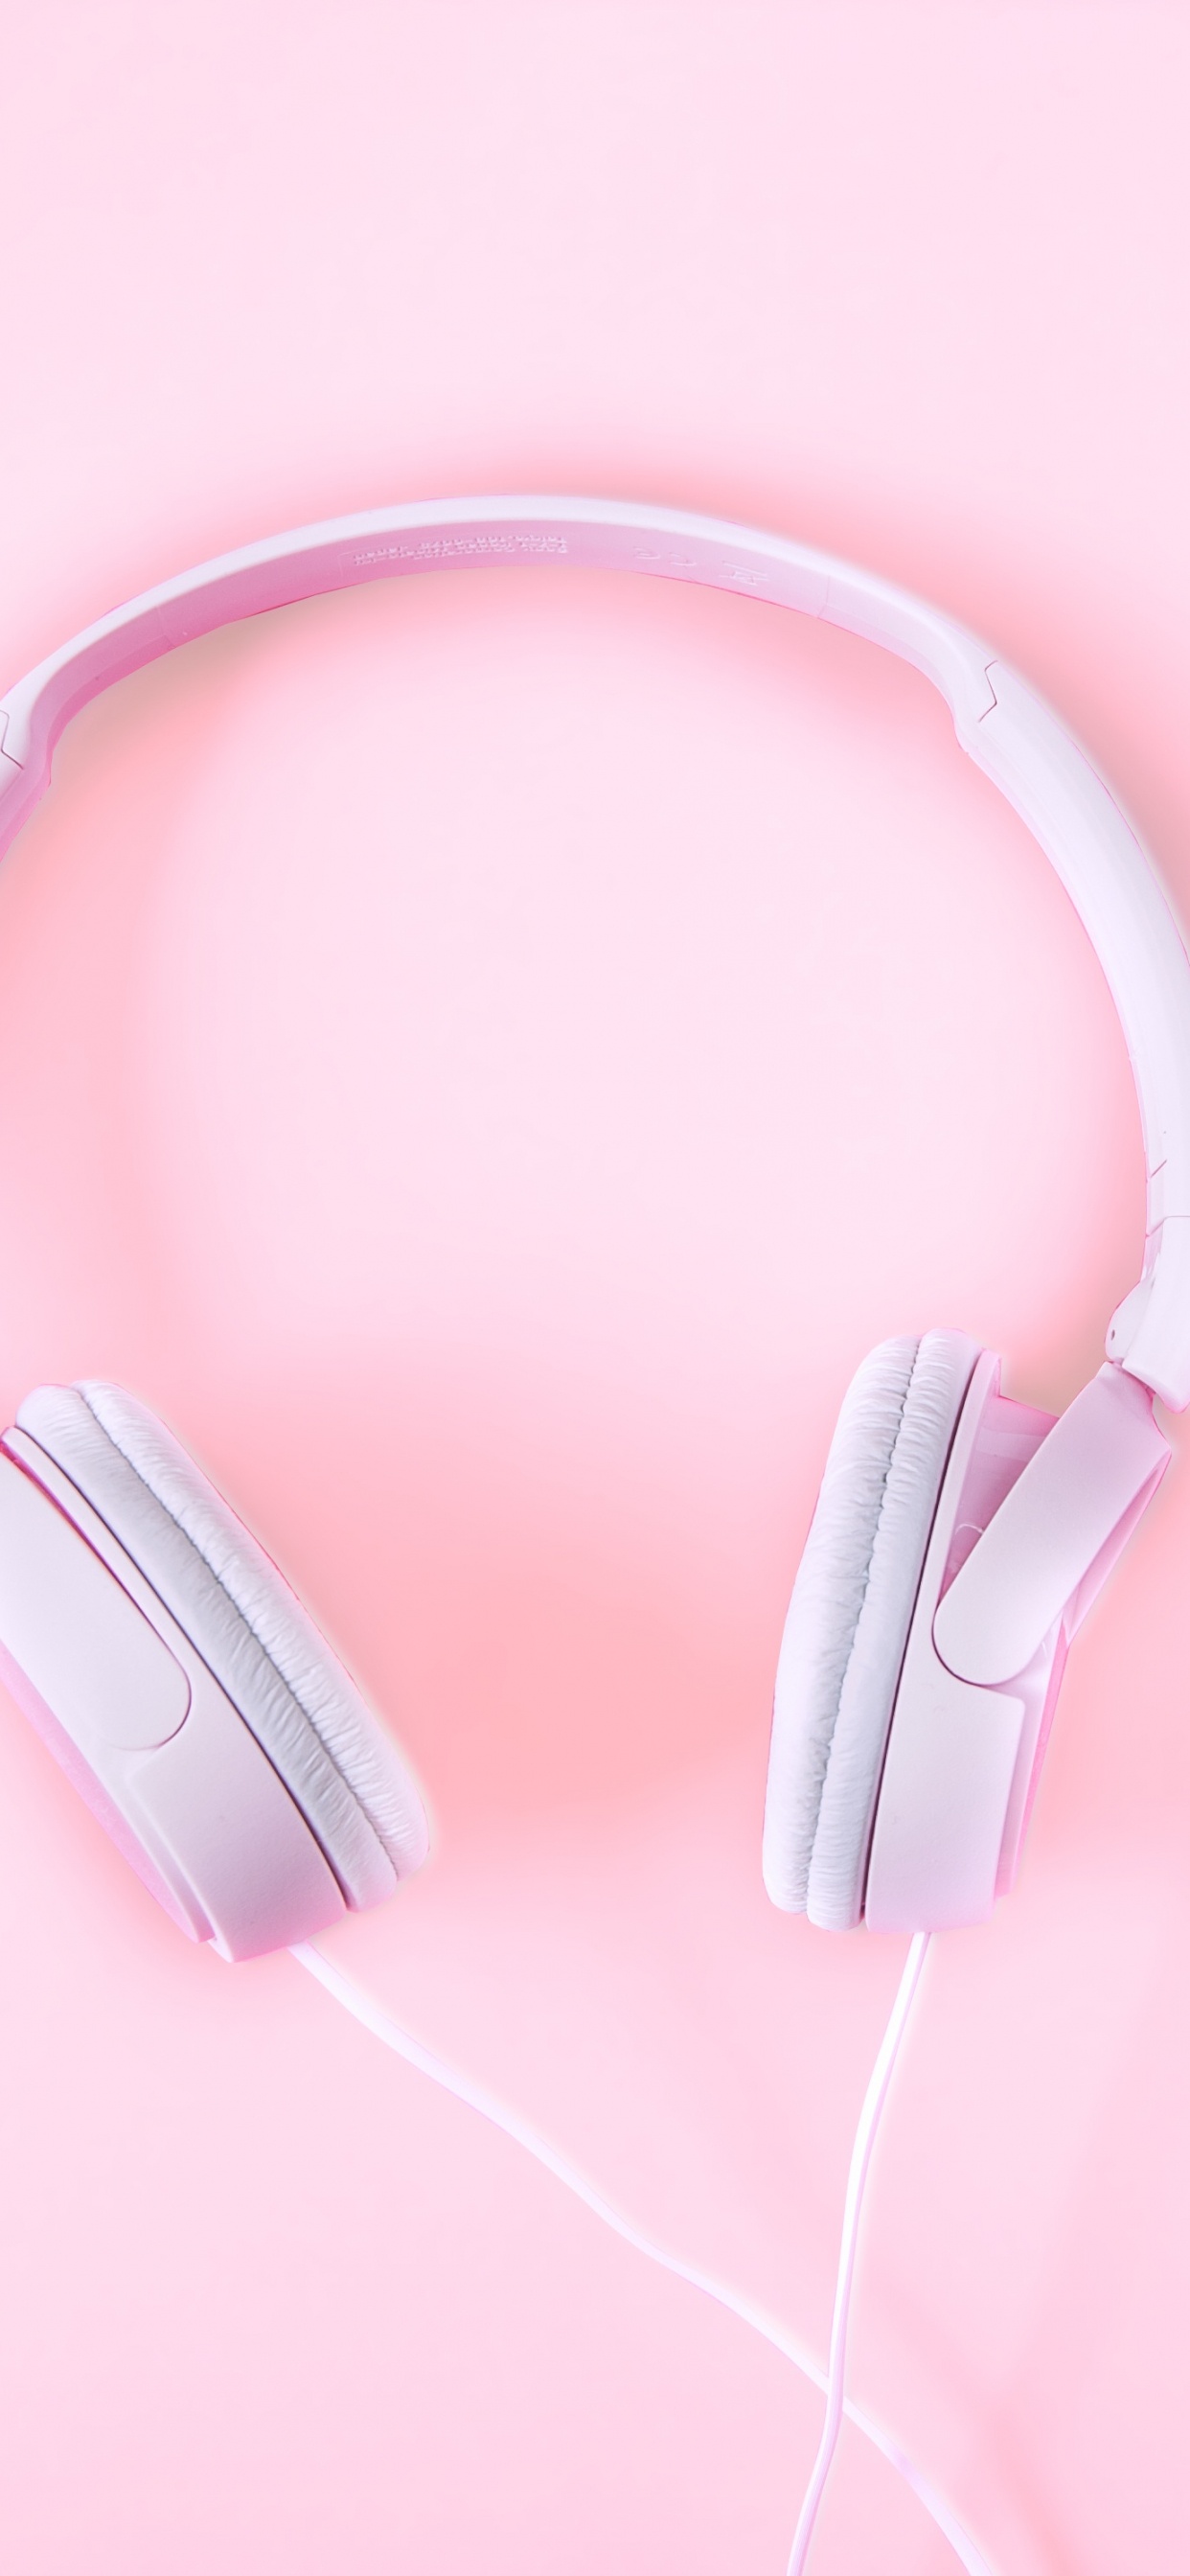 粉红色, 音频设备, 小工具, 耳朵, 电子设备 壁纸 1242x2688 允许